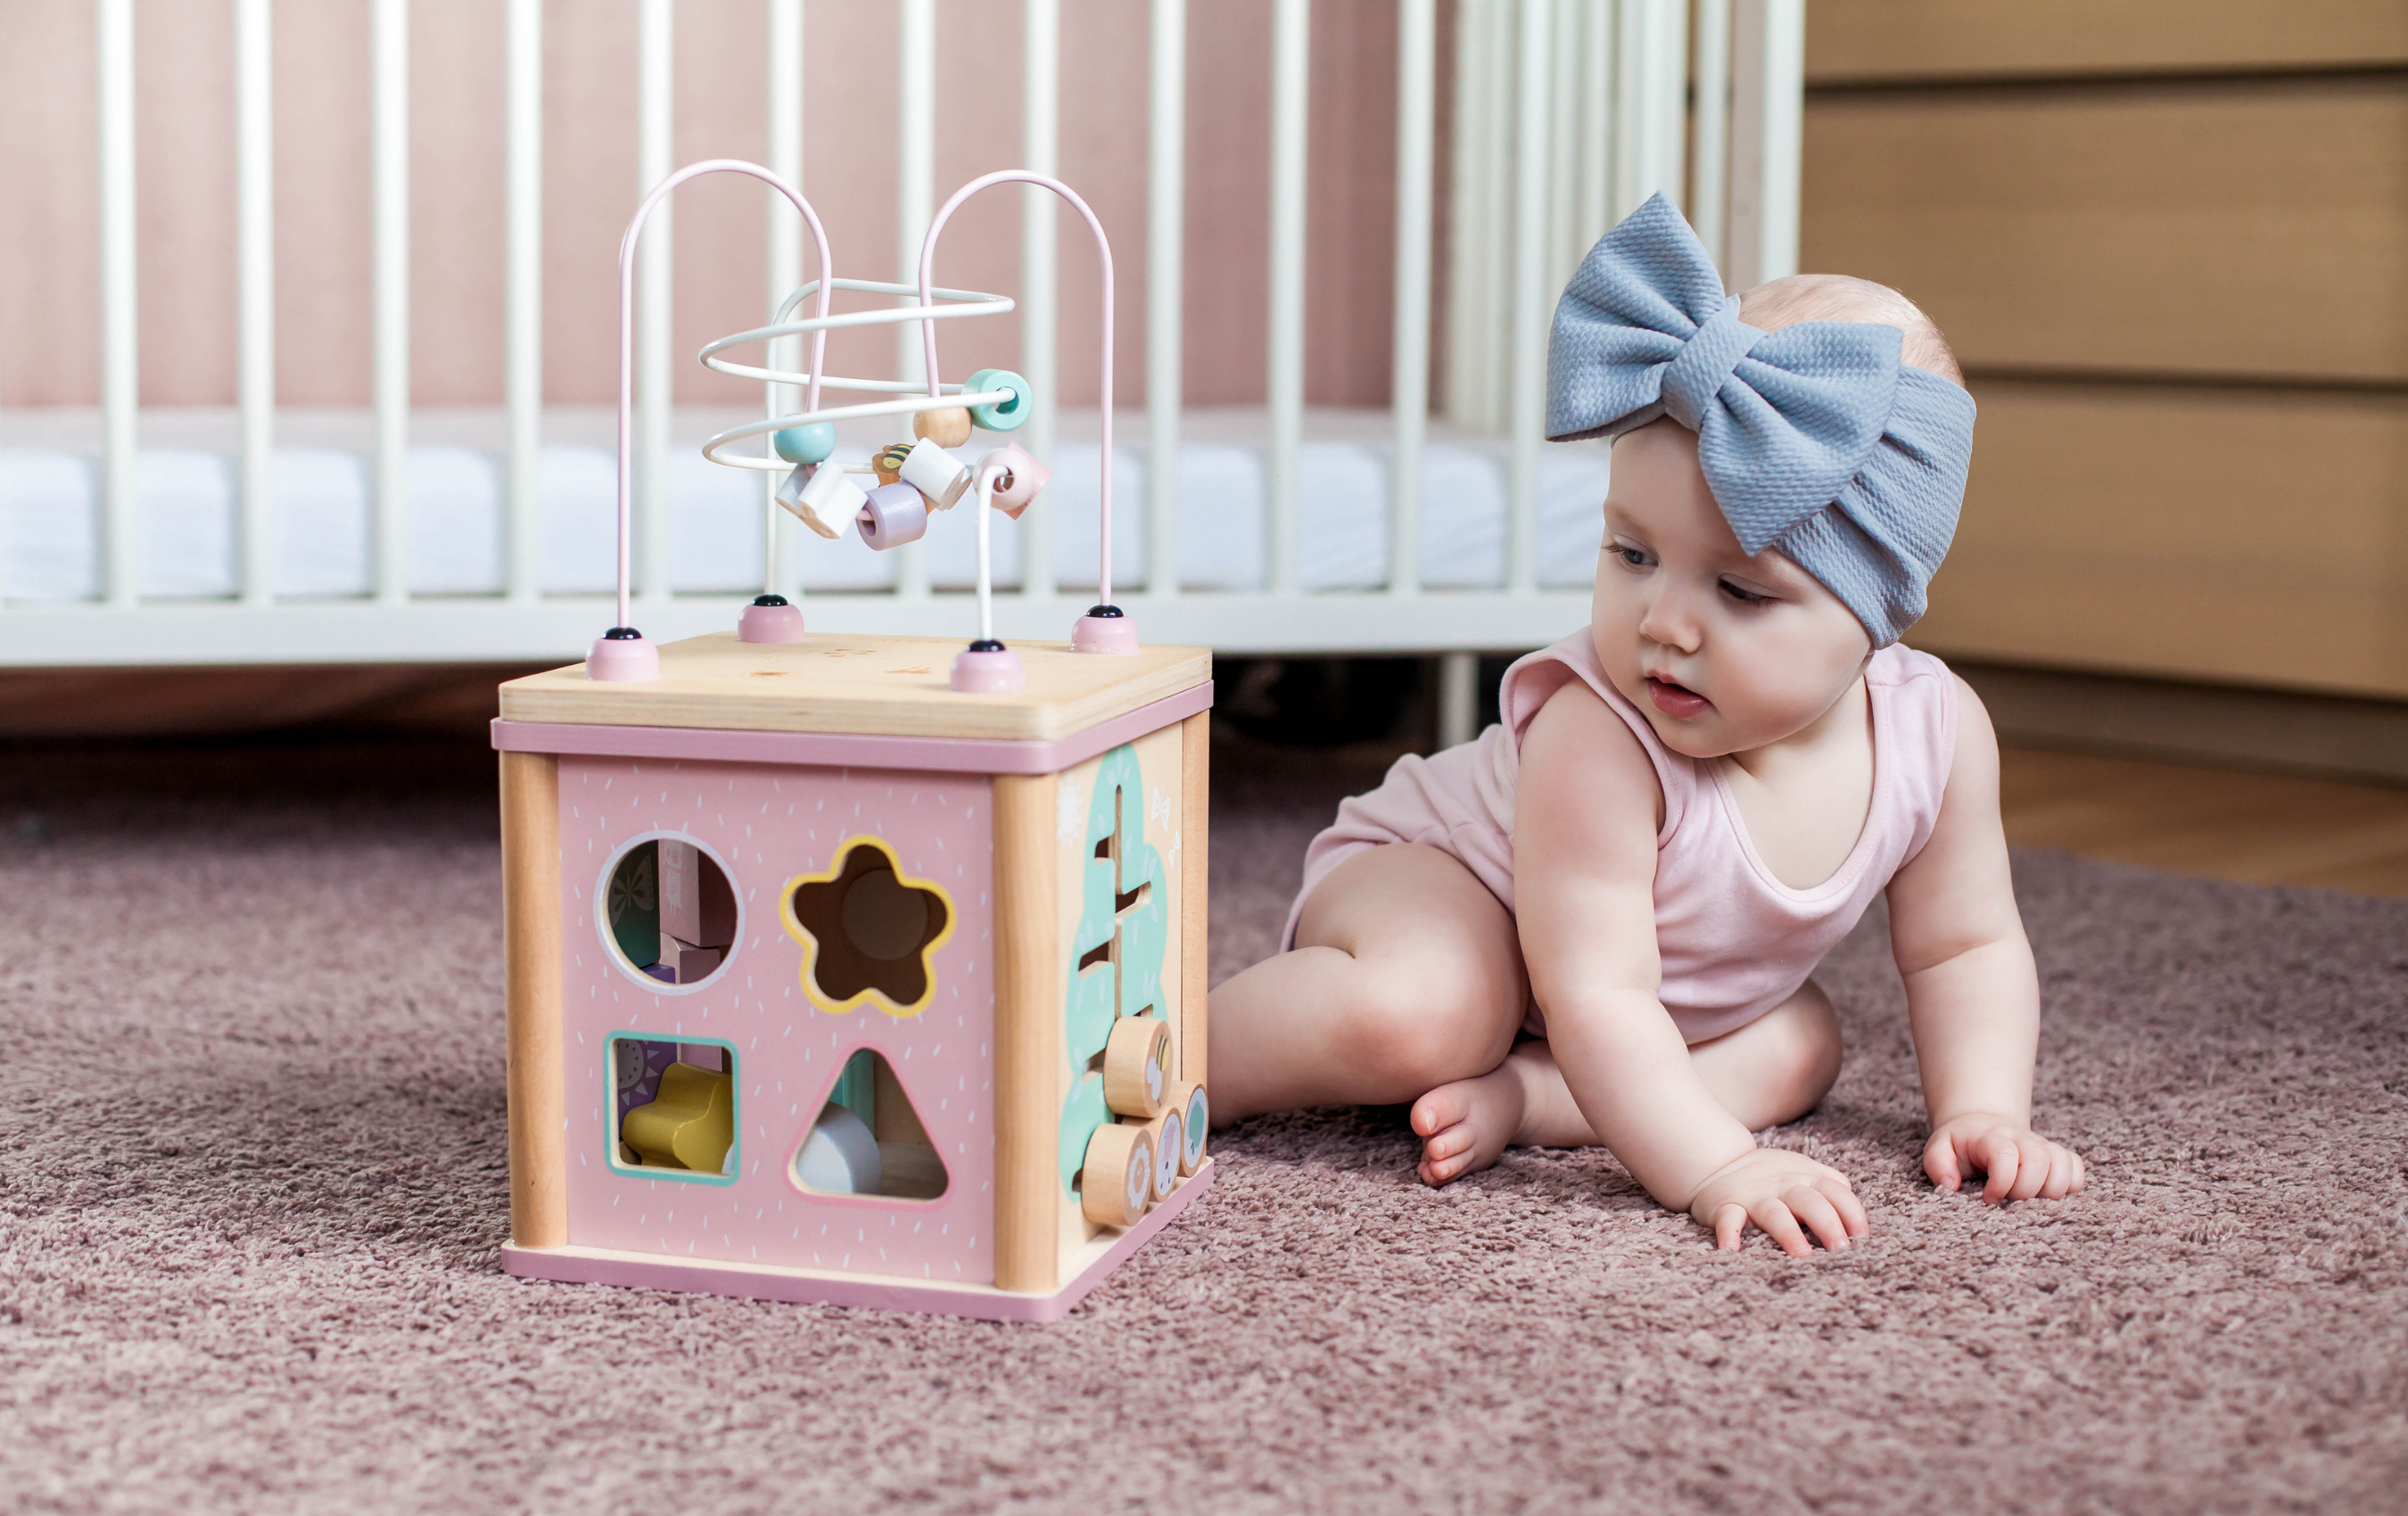 Quel jeu de construction pour bébé ? – L'Enfant Malin